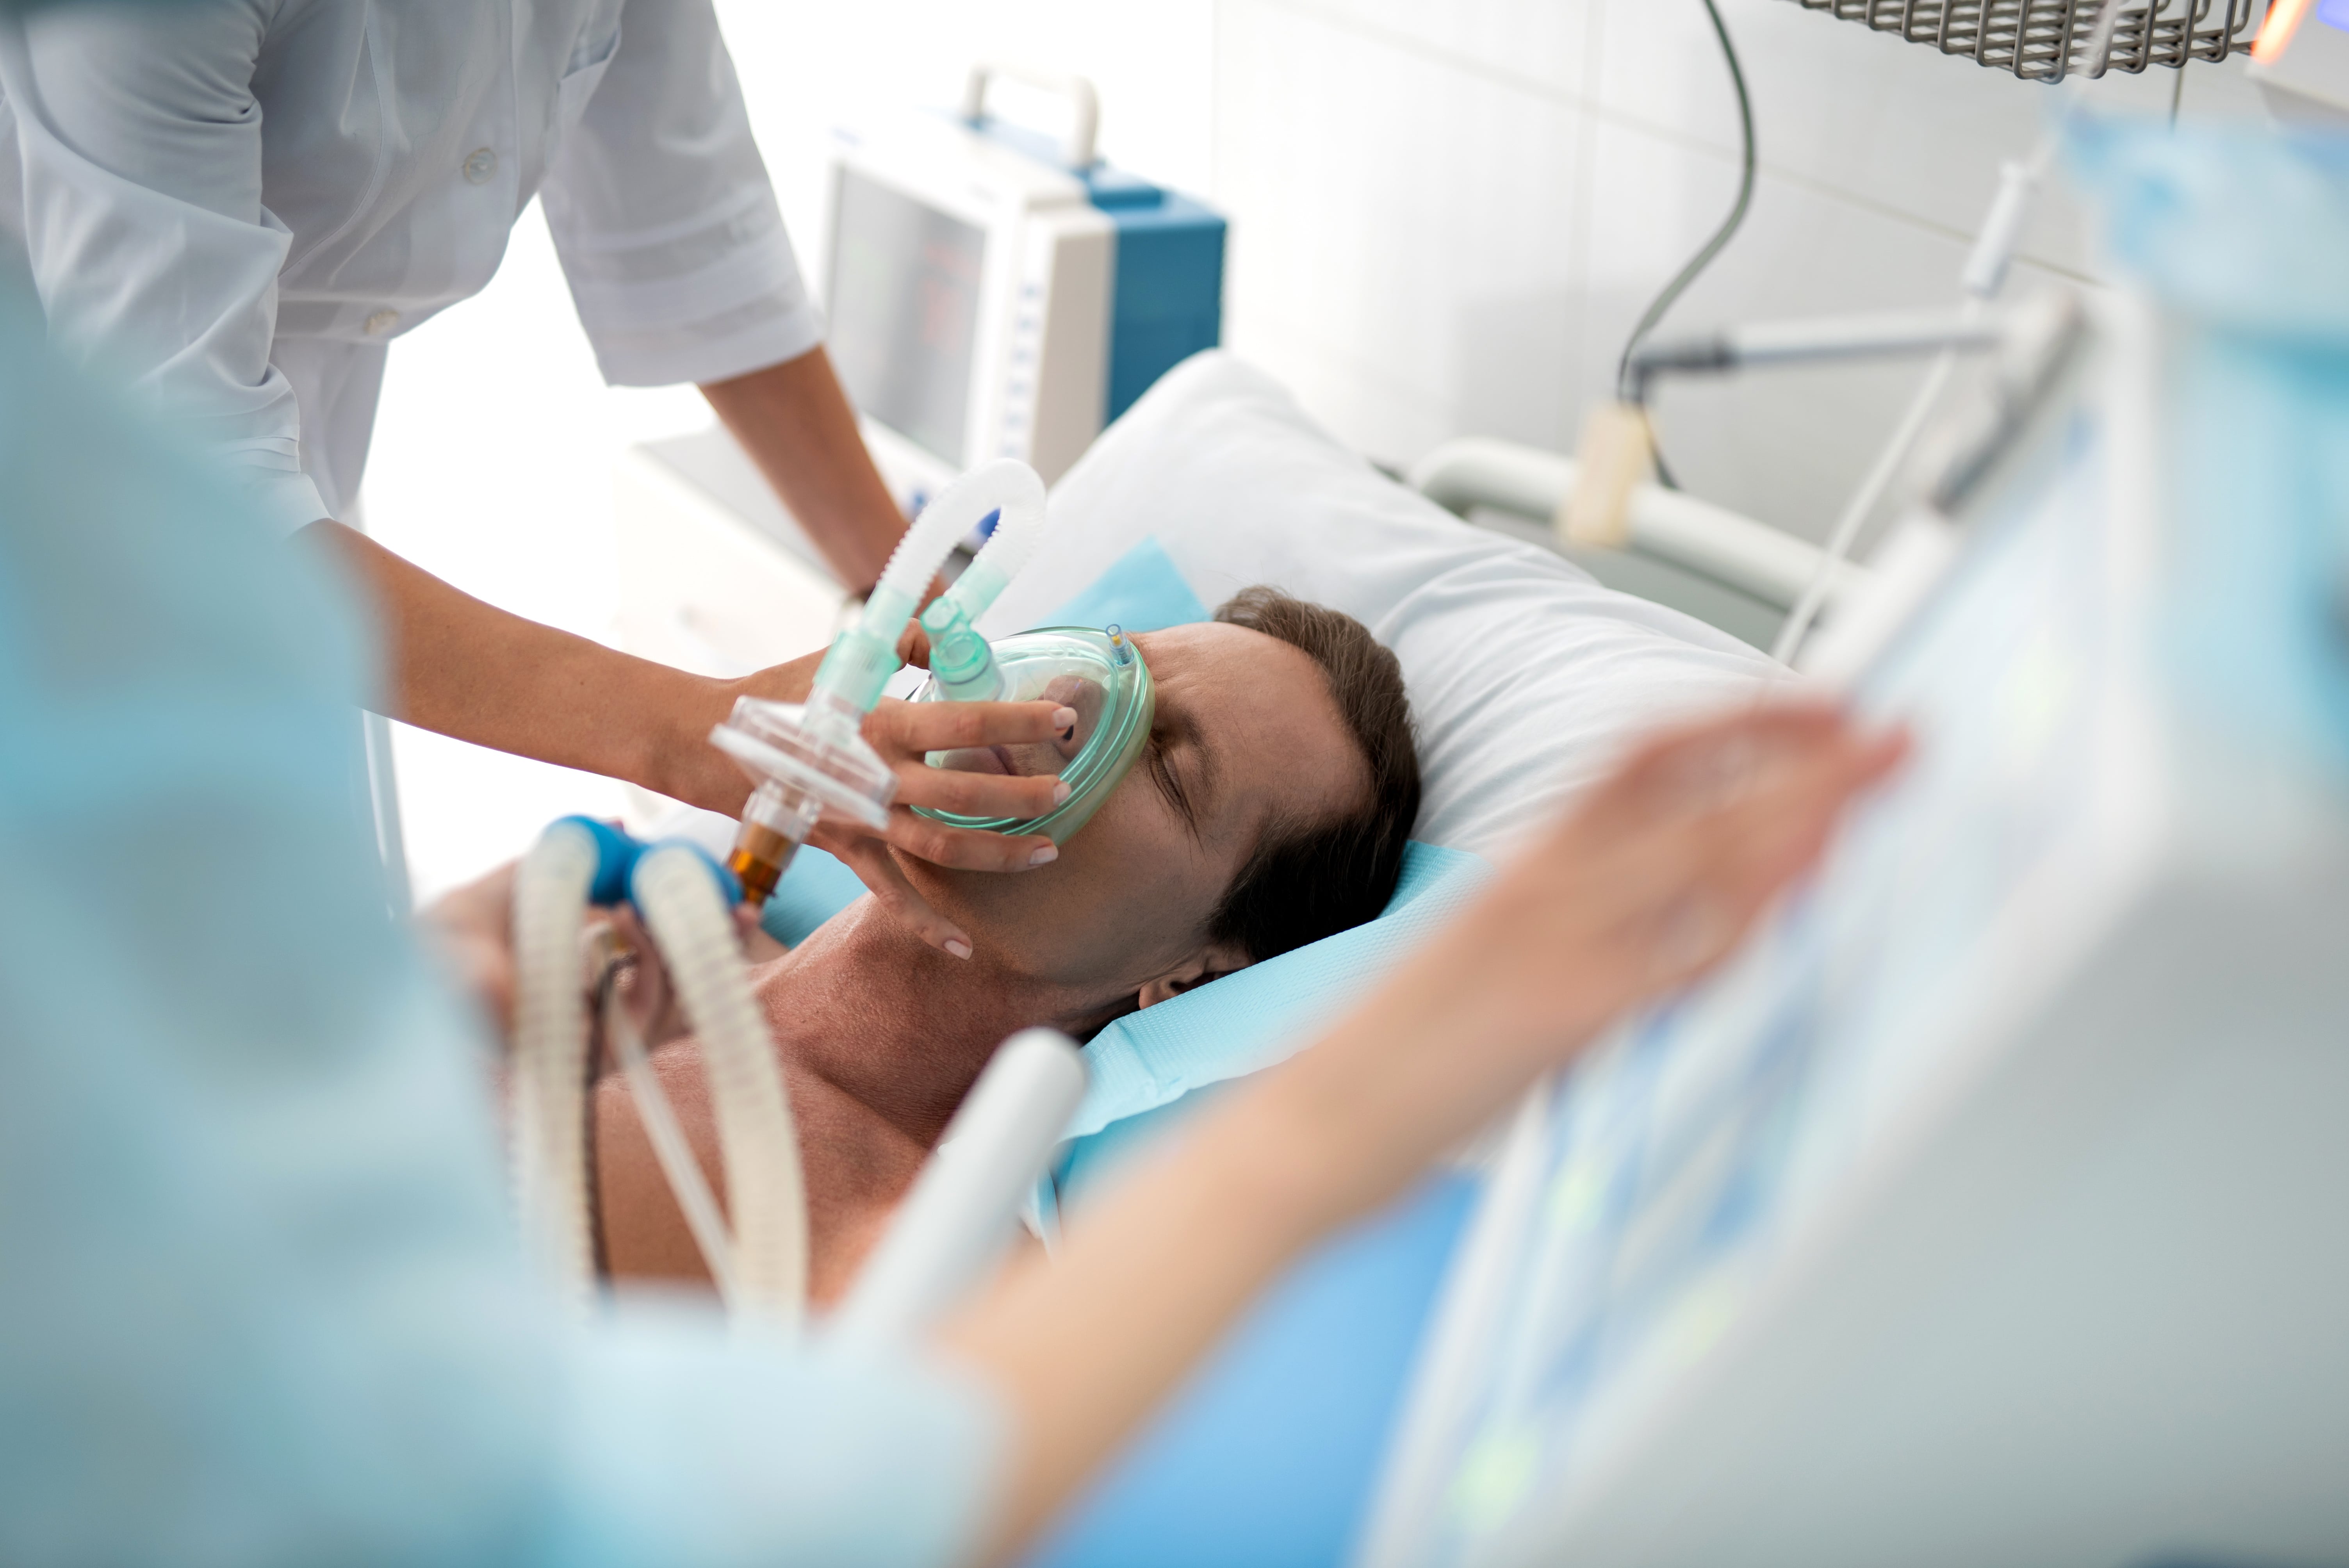 La légionellose est une infection respiratoire grave qui nécessite une hospitalisation dans les cas les plus graves. © peterschreiber.media, Adobe Stock